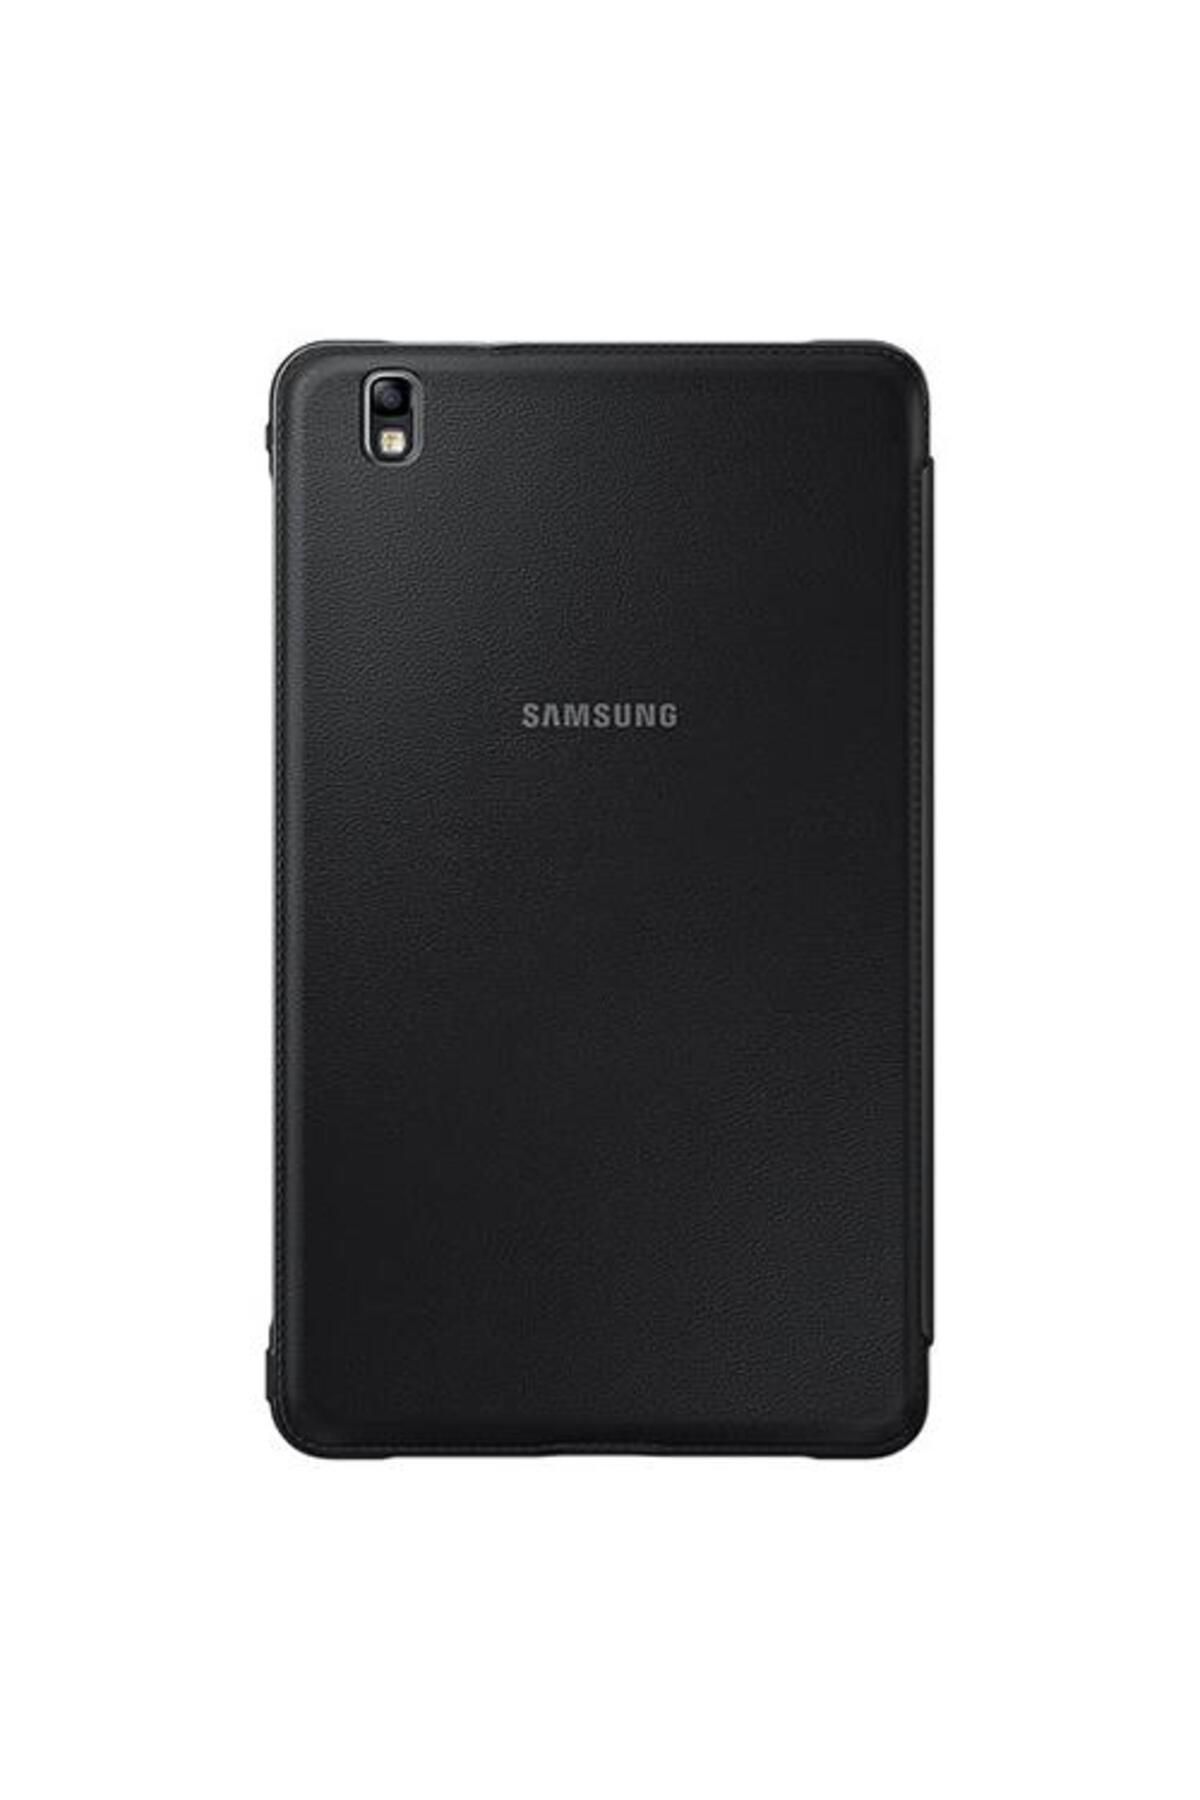 Samsung Galaxy Tab Pro 8.4 T320 Bookcover Kılıf Siyah EF-BT320BBEGWW